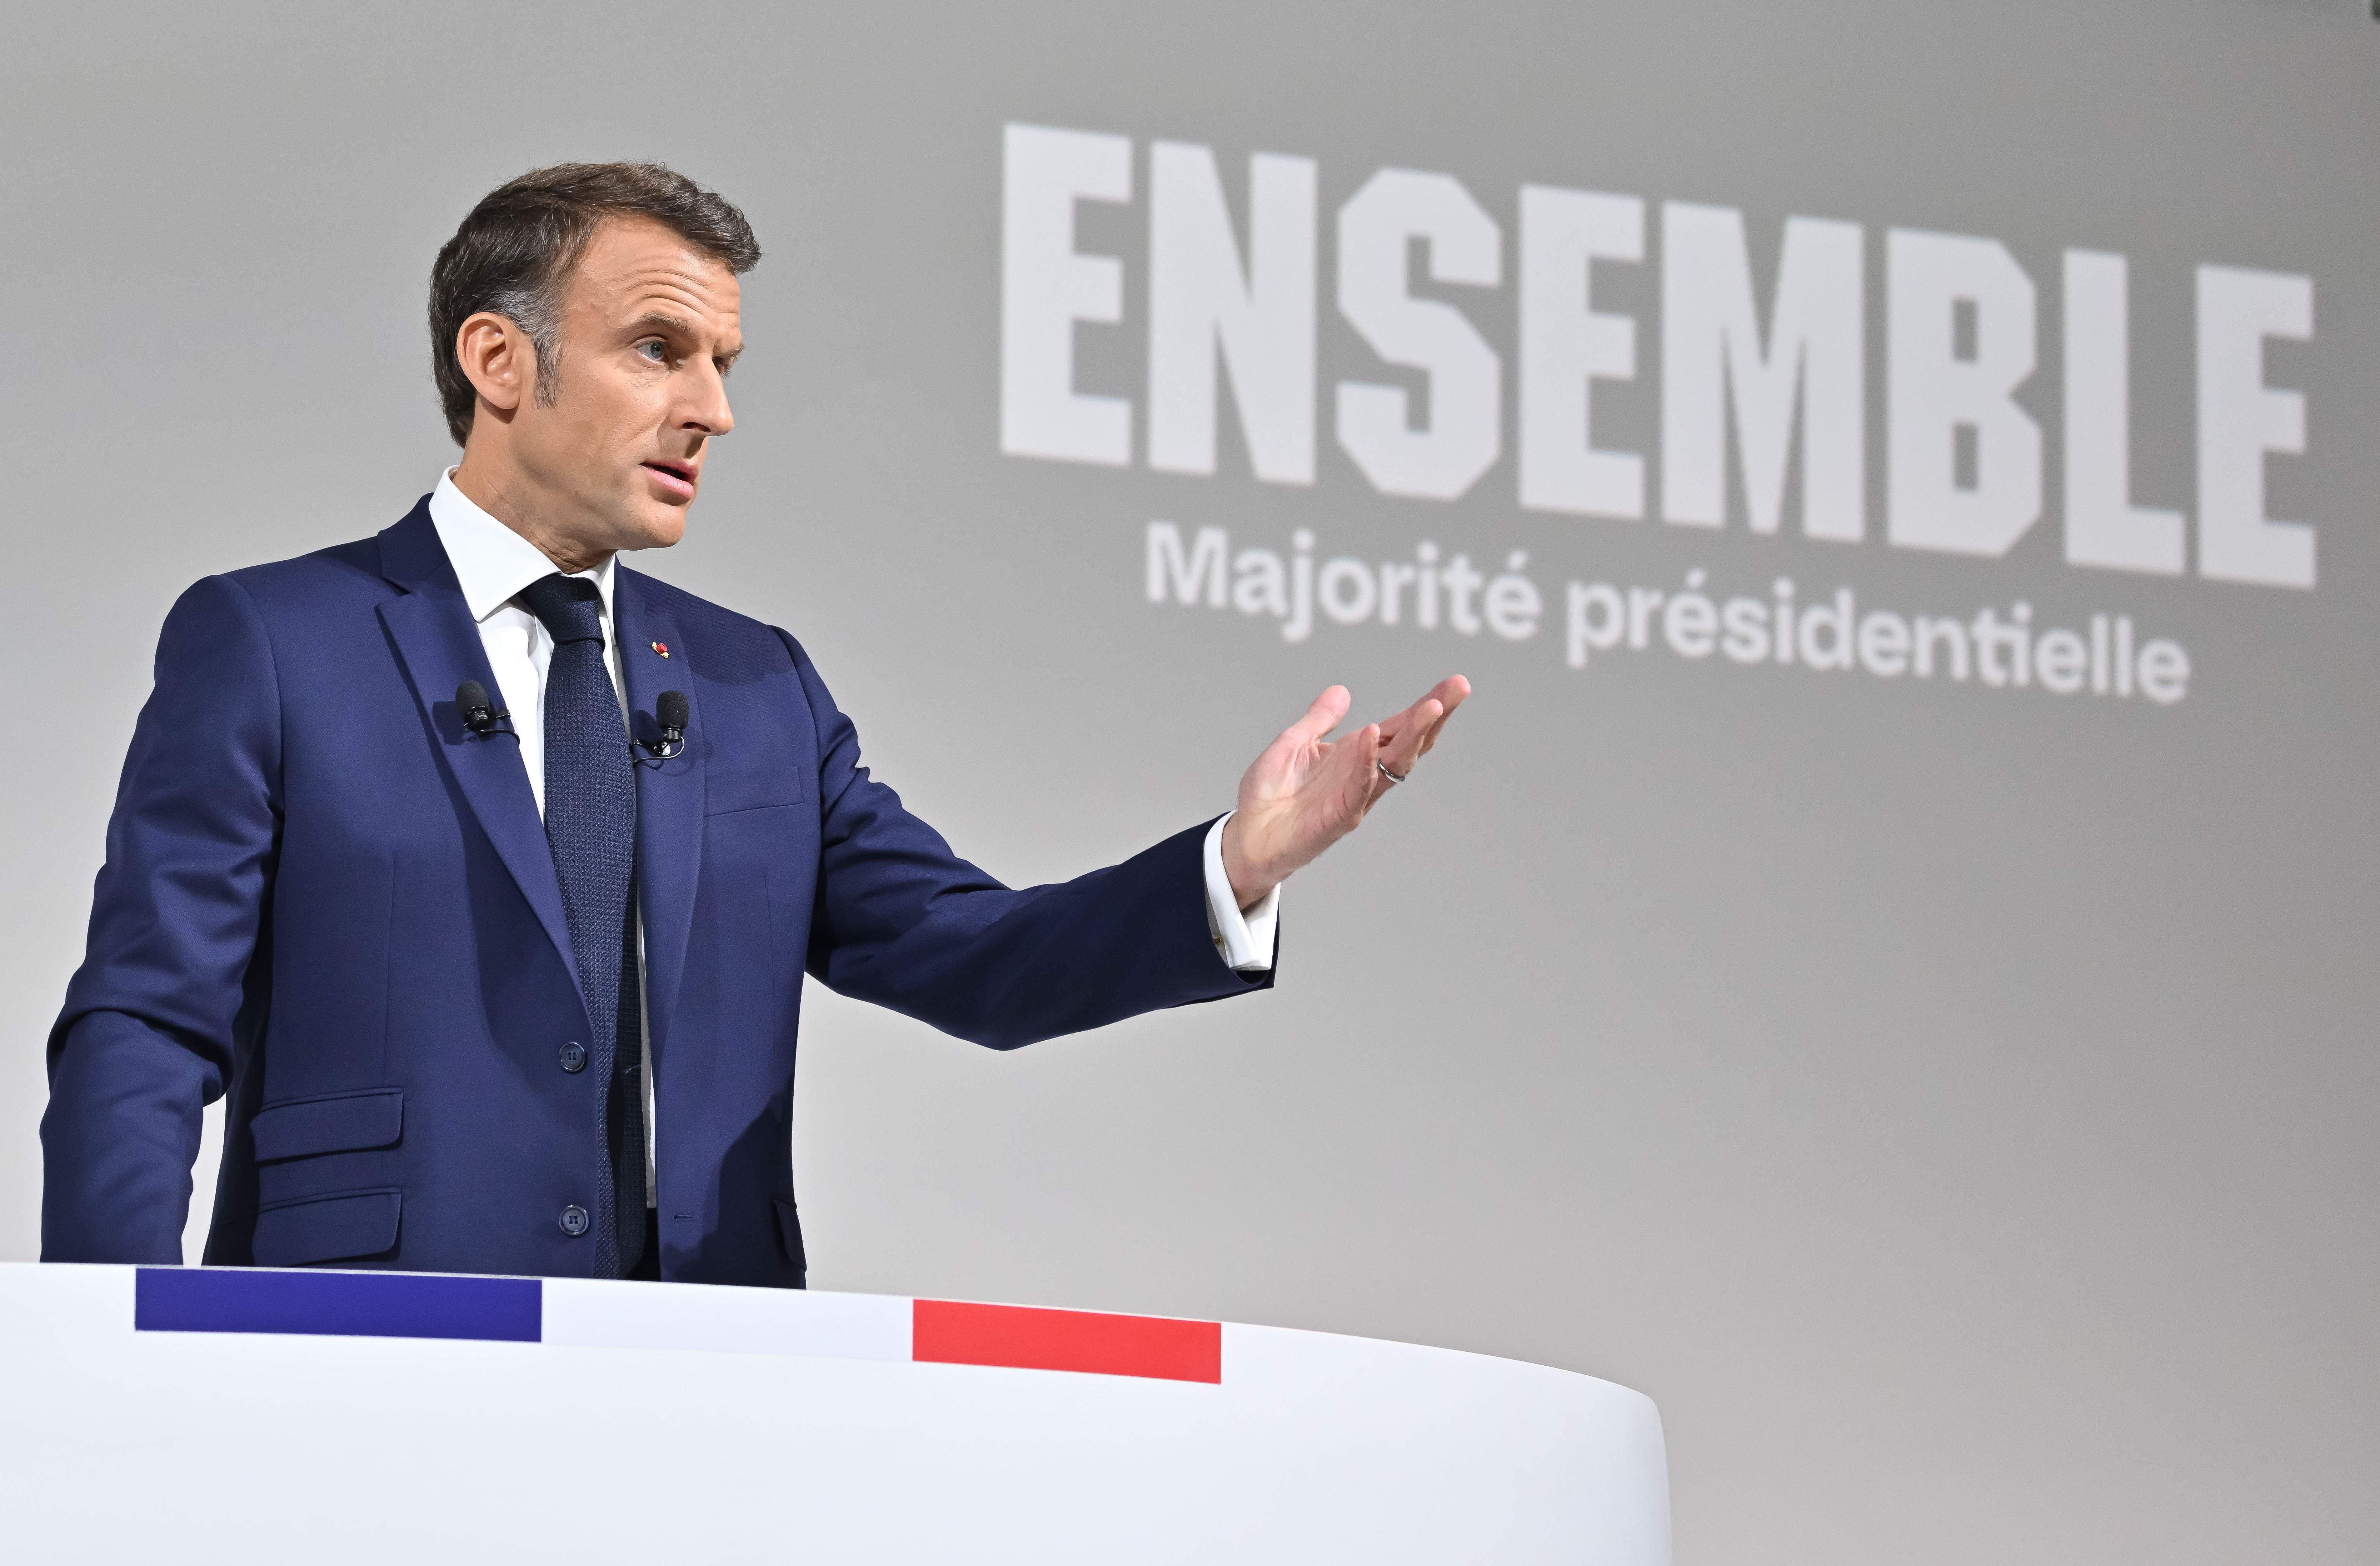 Il presidente francese Emmanuel Macron durante la conferenza stampa a Parigi